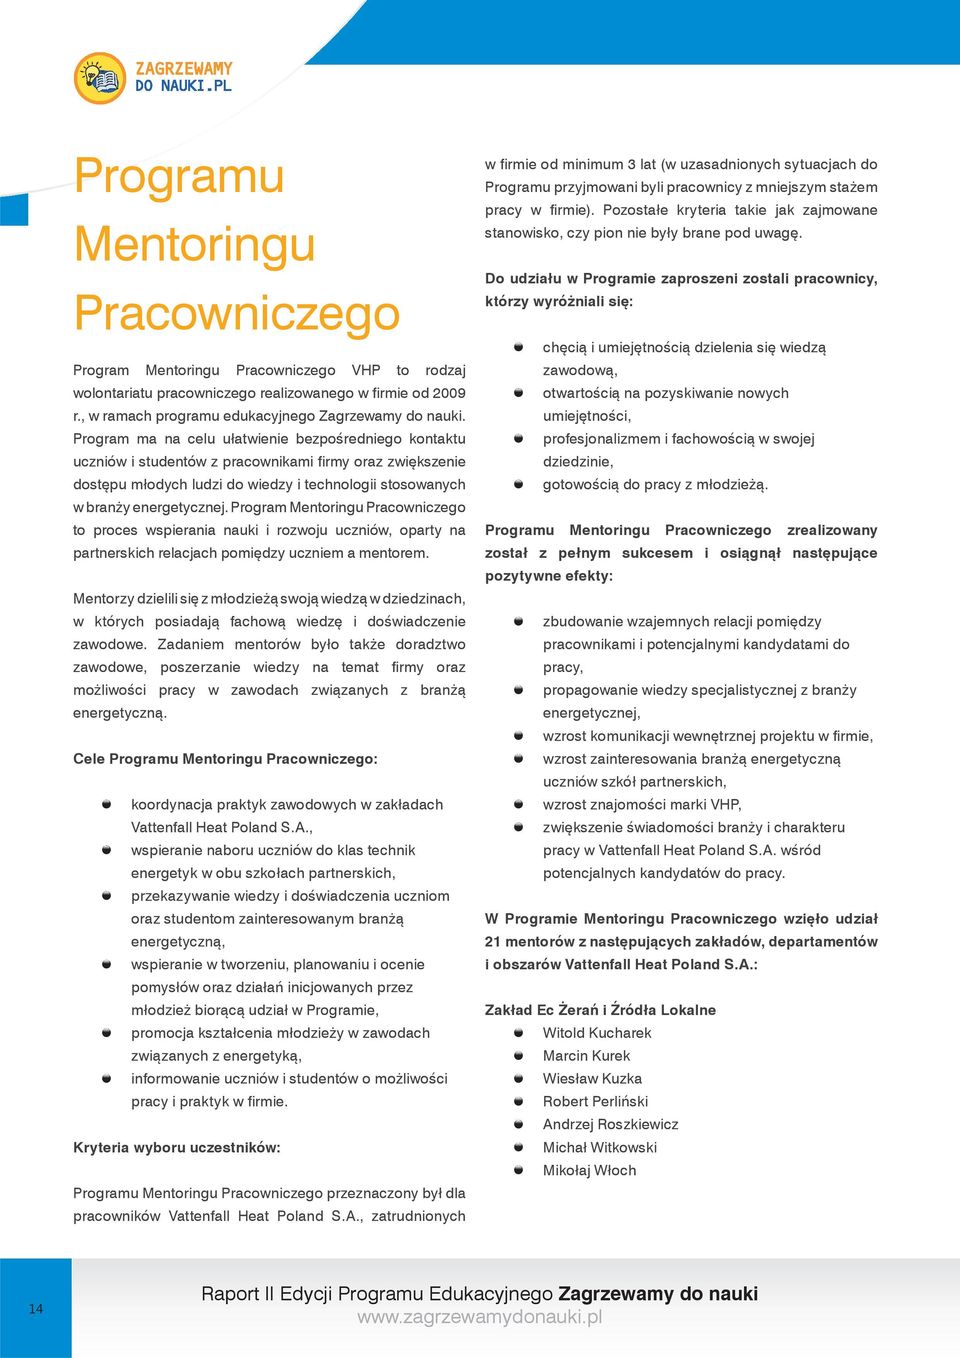 Program Mentoringu Pracowniczego to proces wspierania nauki i rozwoju uczniów, oparty na partnerskich relacjach pomiędzy uczniem a mentorem.